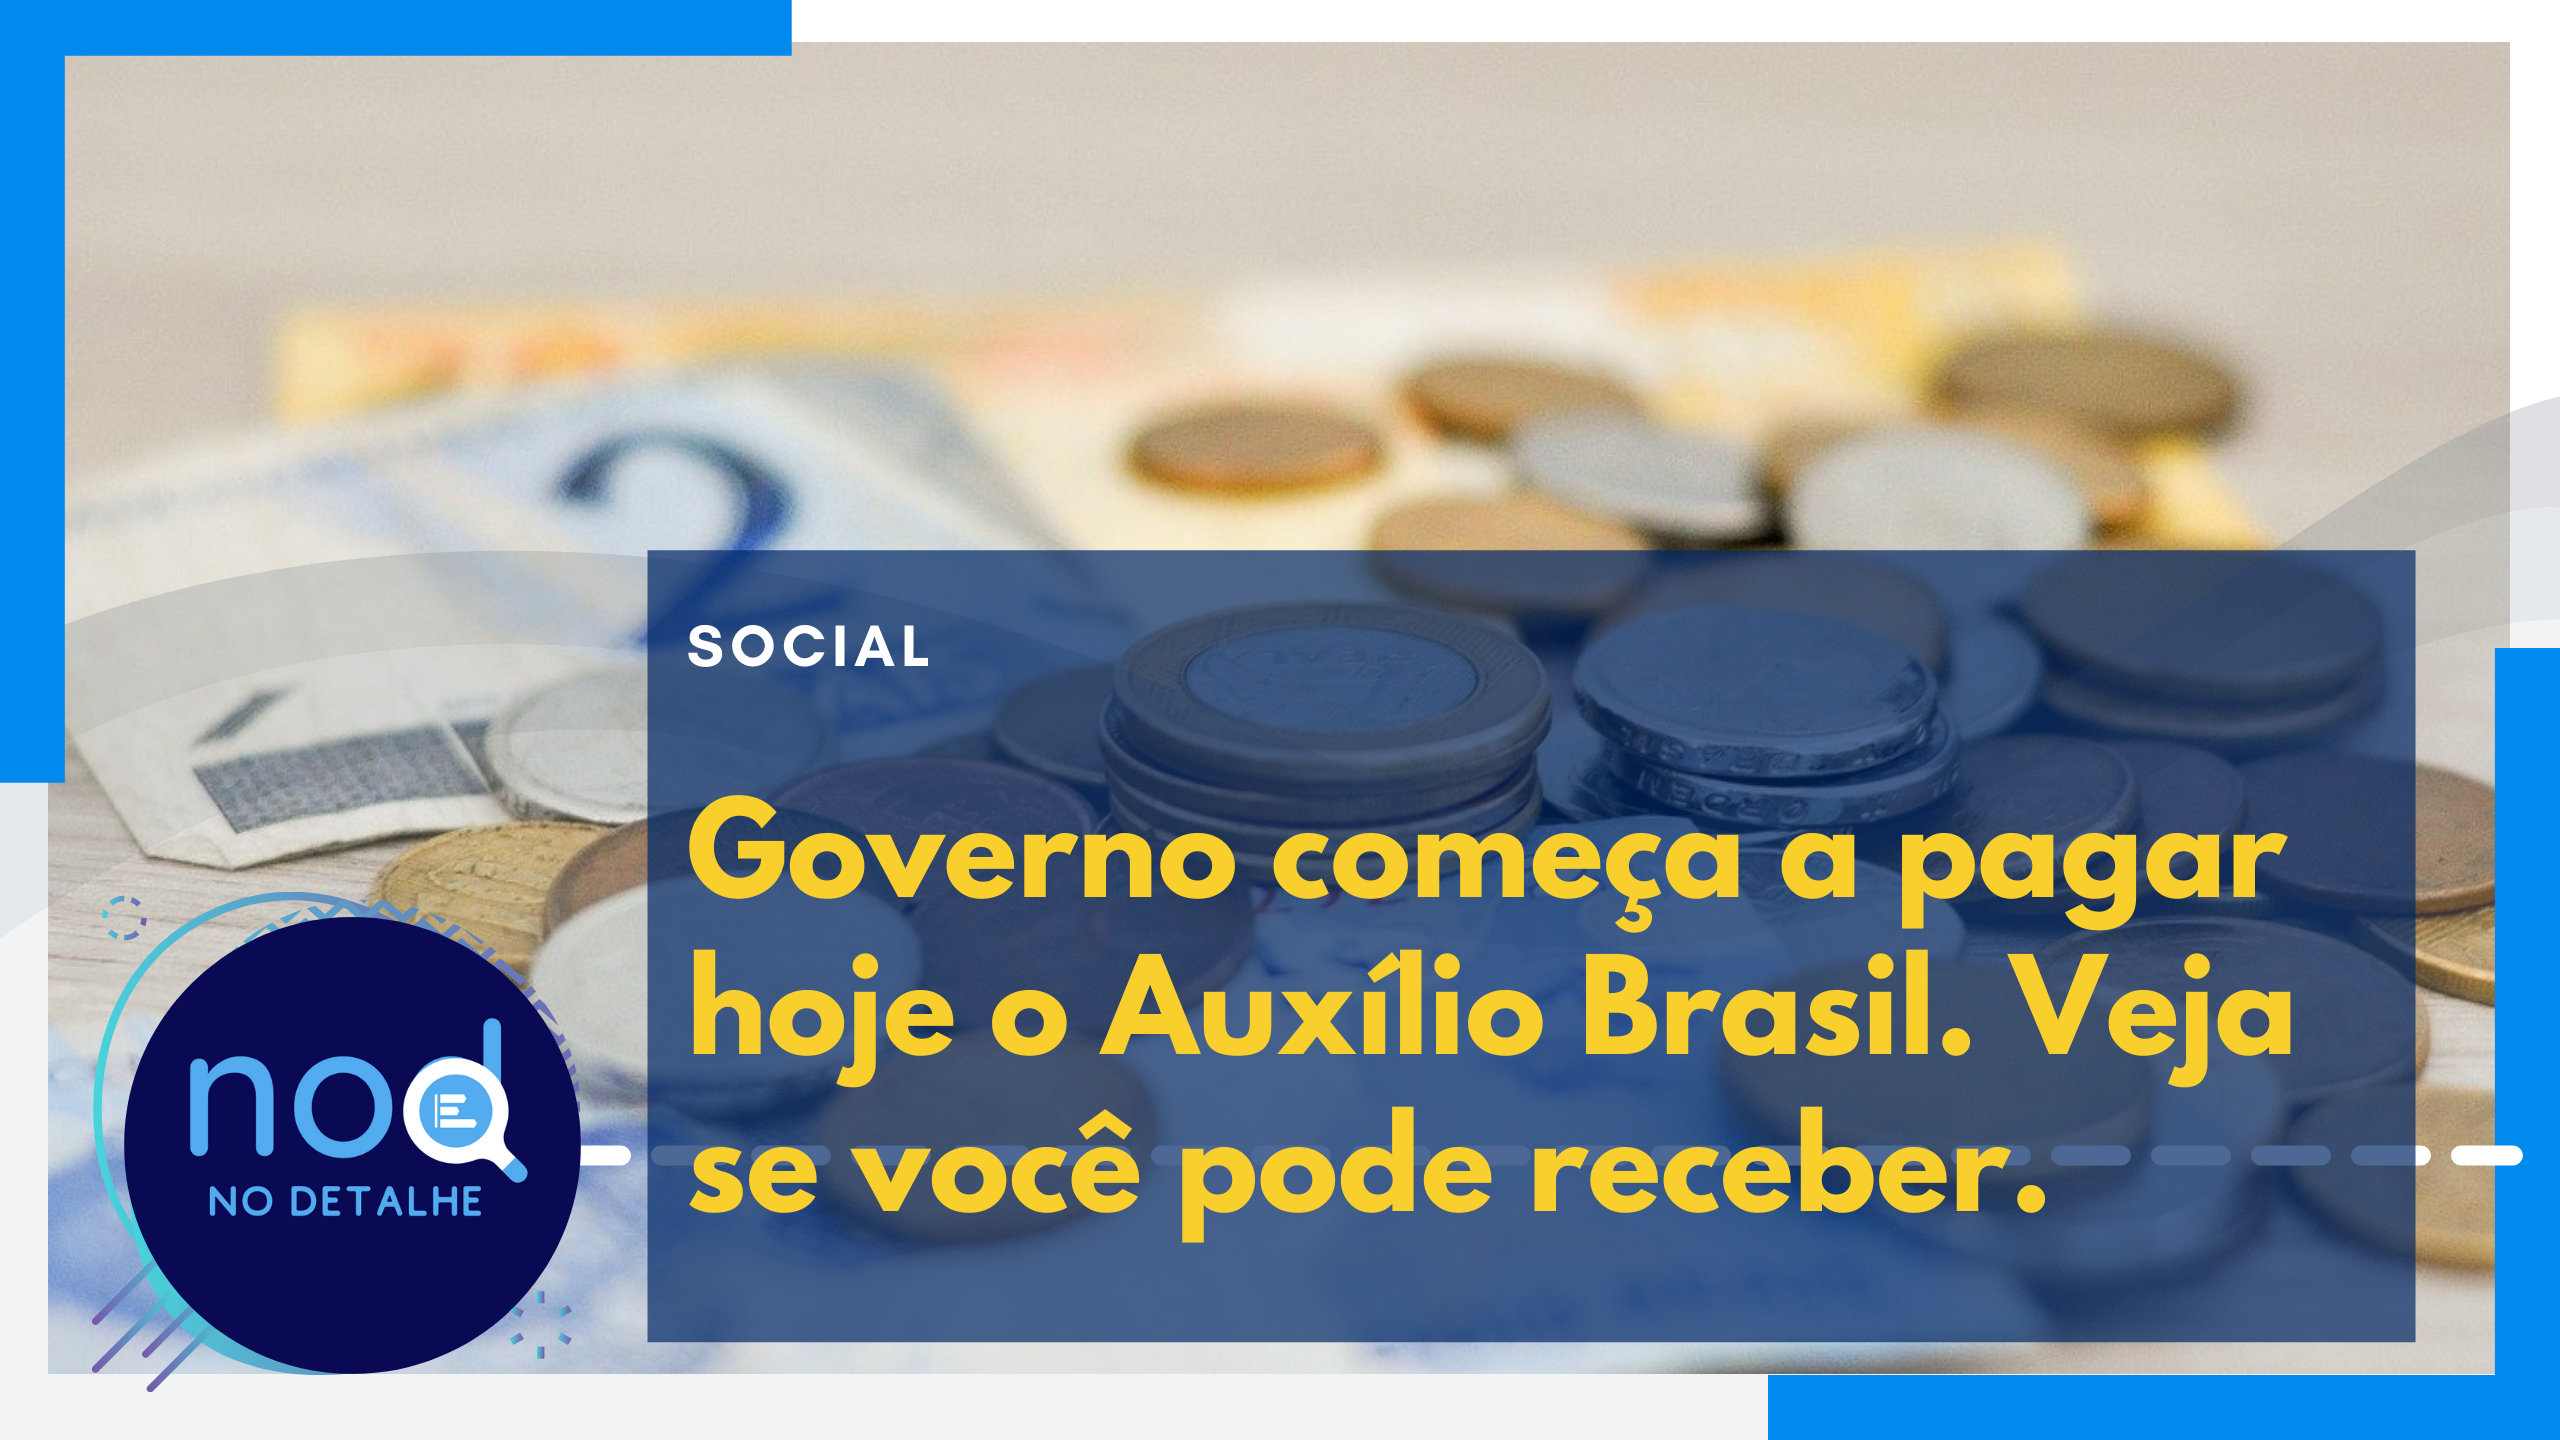 Governo começa a pagar hoje o Auxílio Brasil. Veja se você pode receber.